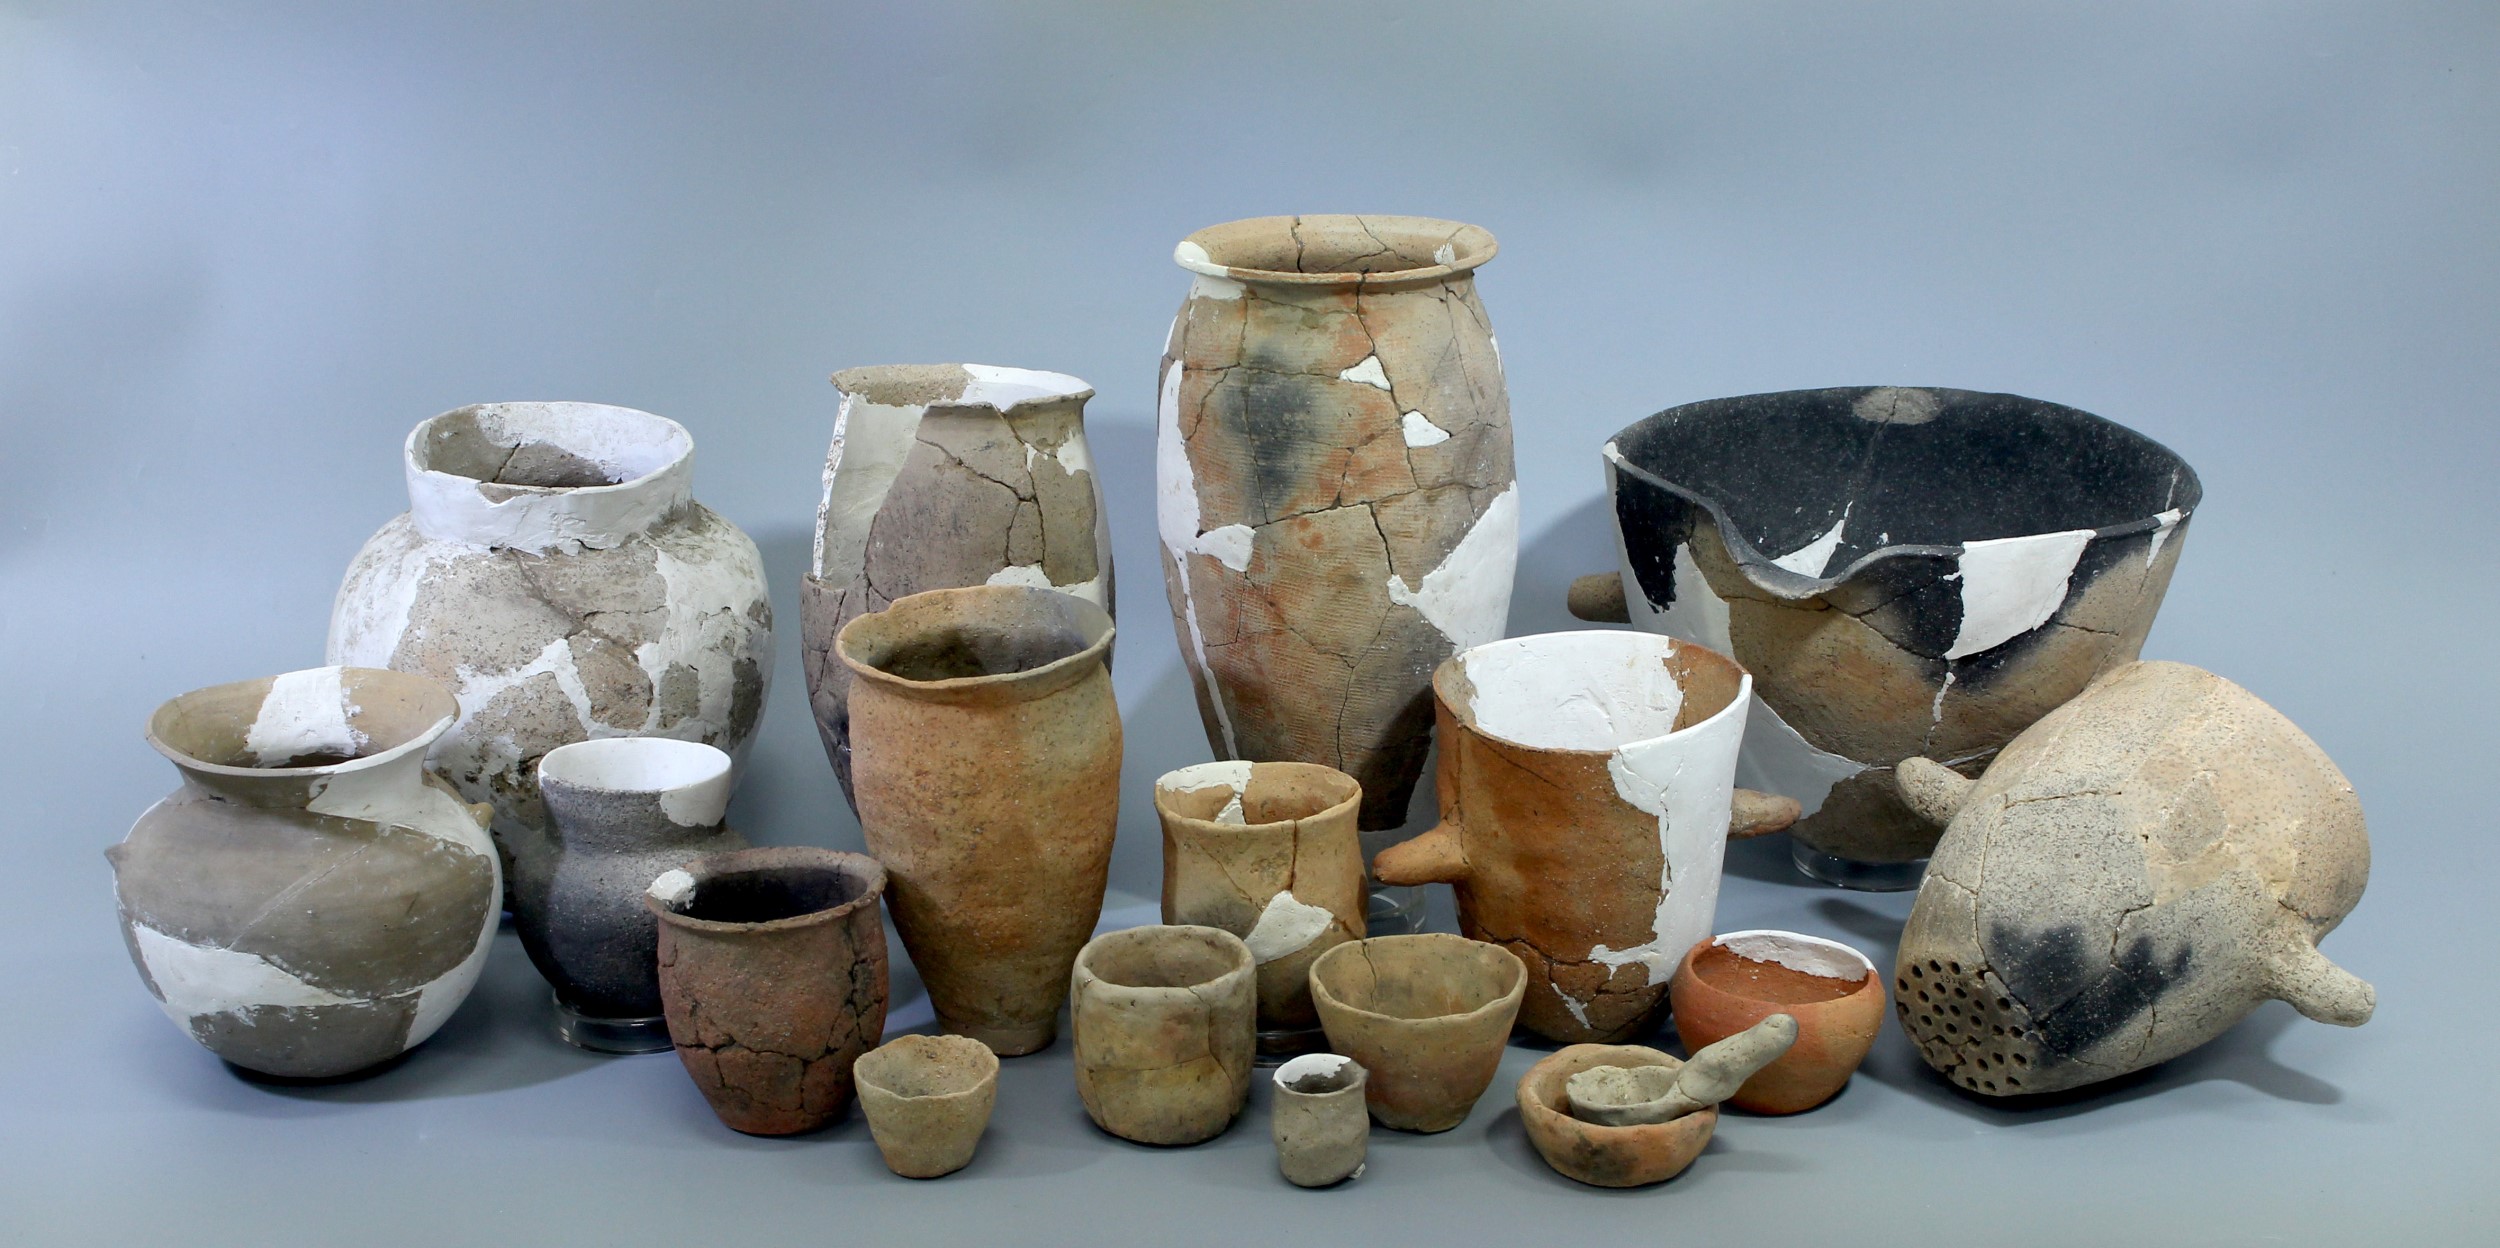 남원 세전리 유적에서 출토된 다양한 그릇들.jpg